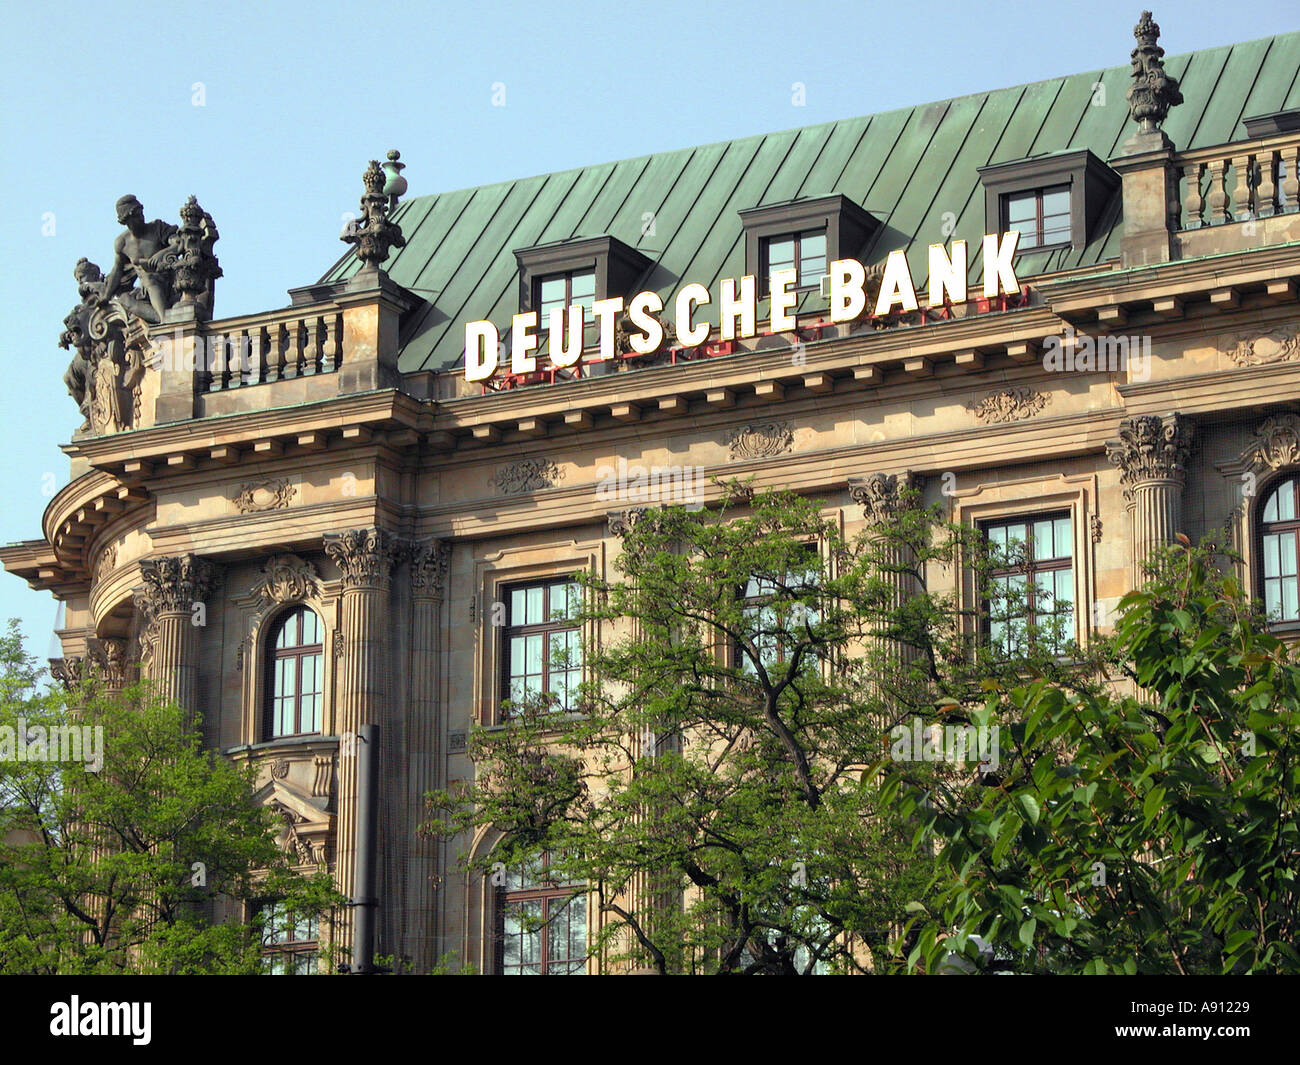 die DEUTSCHE BANK Gebäude München Stockfotografie - Alamy